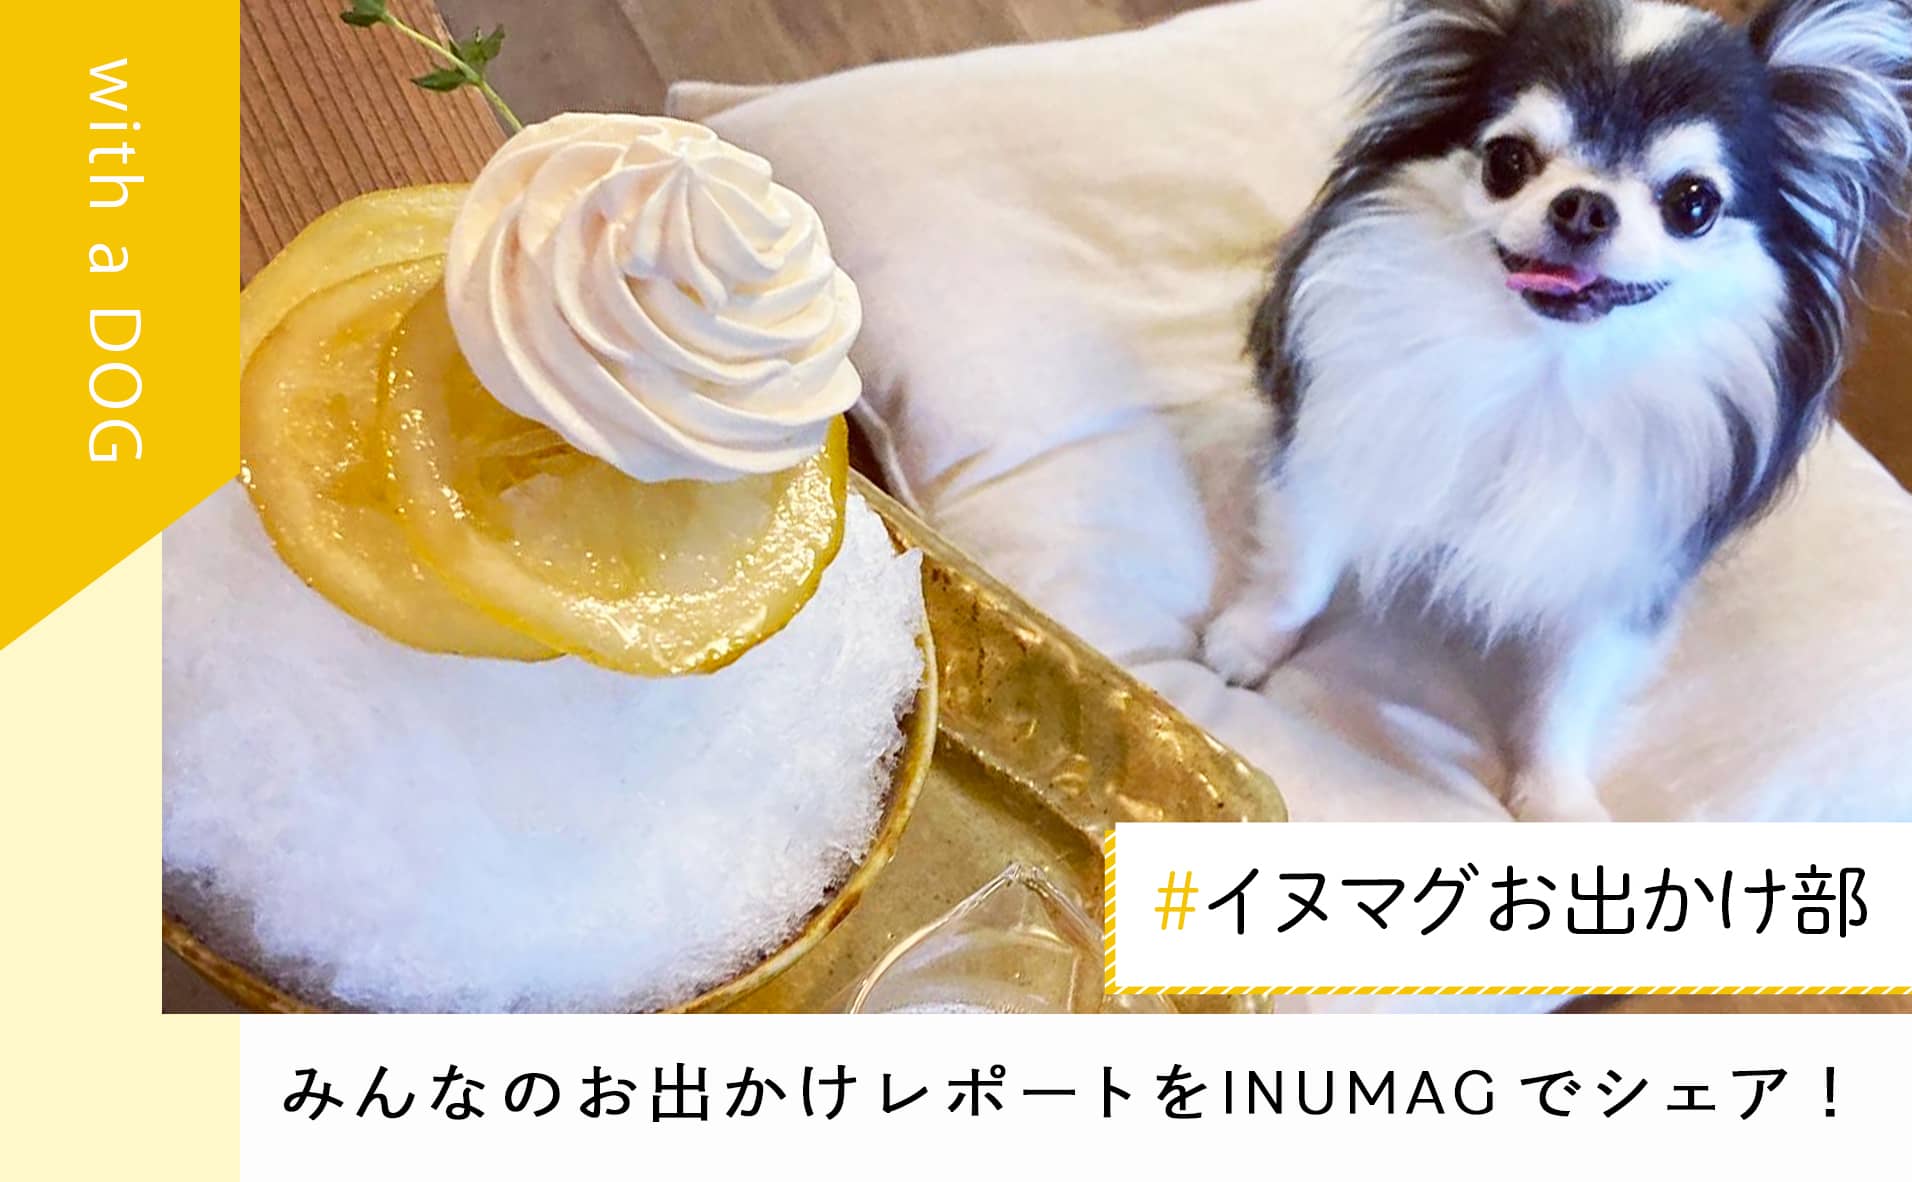 犬と一緒に”かき氷”が食べられるカフェを紹介「#イヌマグお出かけ部」